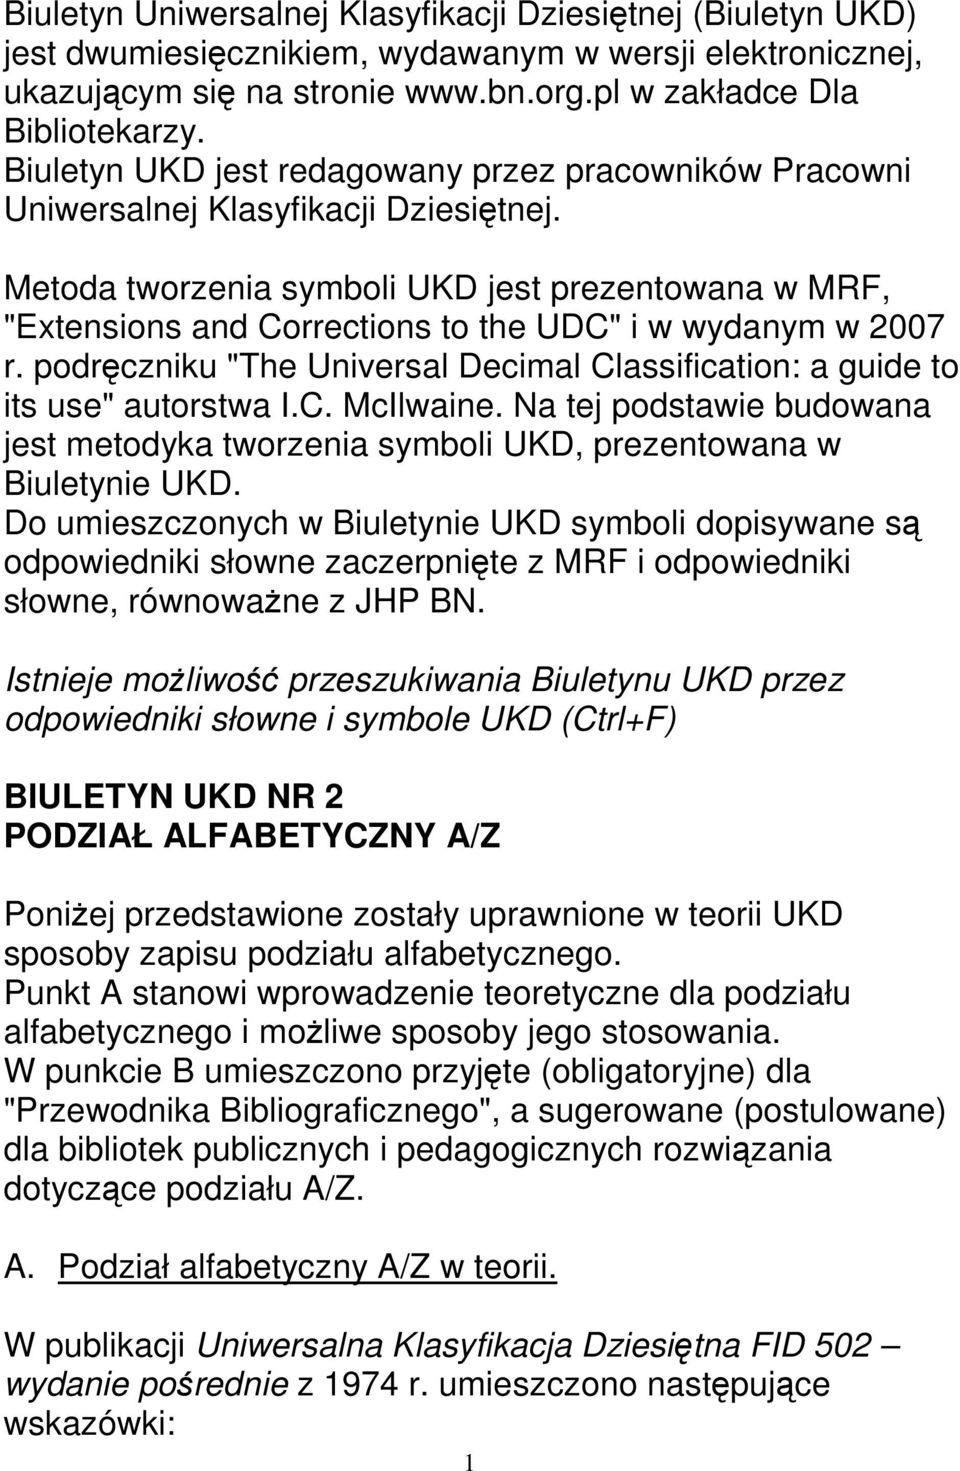 Metoda tworzenia symboli UKD jest prezentowana w MRF, "Extensions and Corrections to the UDC" i w wydanym w 2007 r. podręczniku "The Universal Decimal Classification: a guide to its use" autorstwa I.